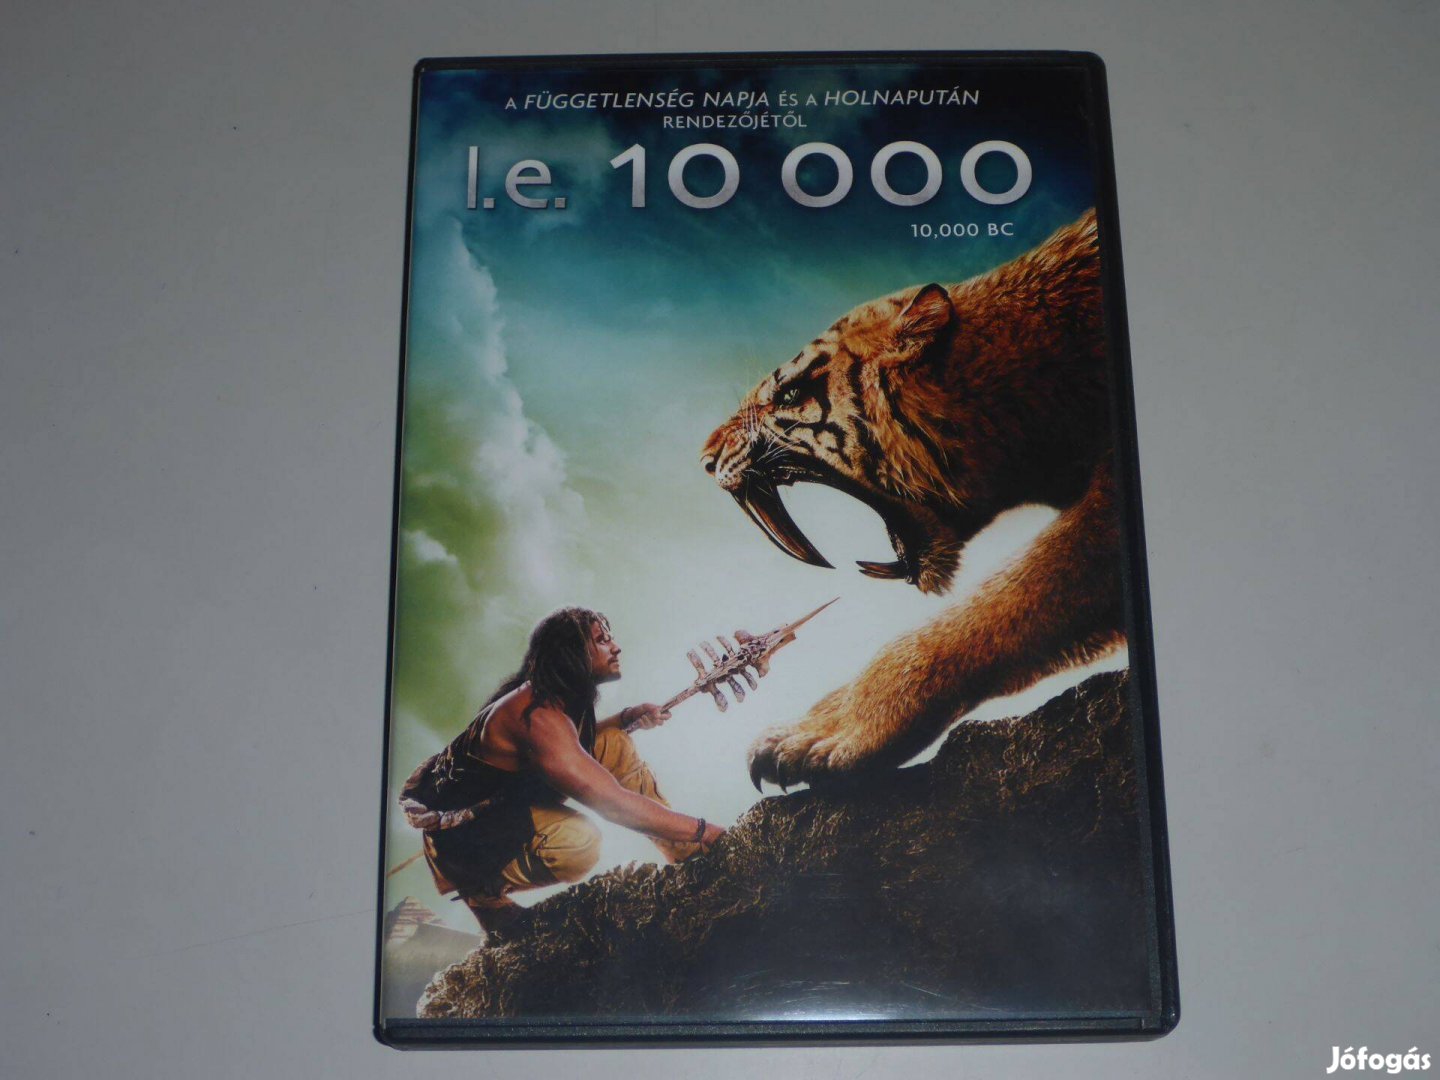 I.e. 10 000 DVD film "